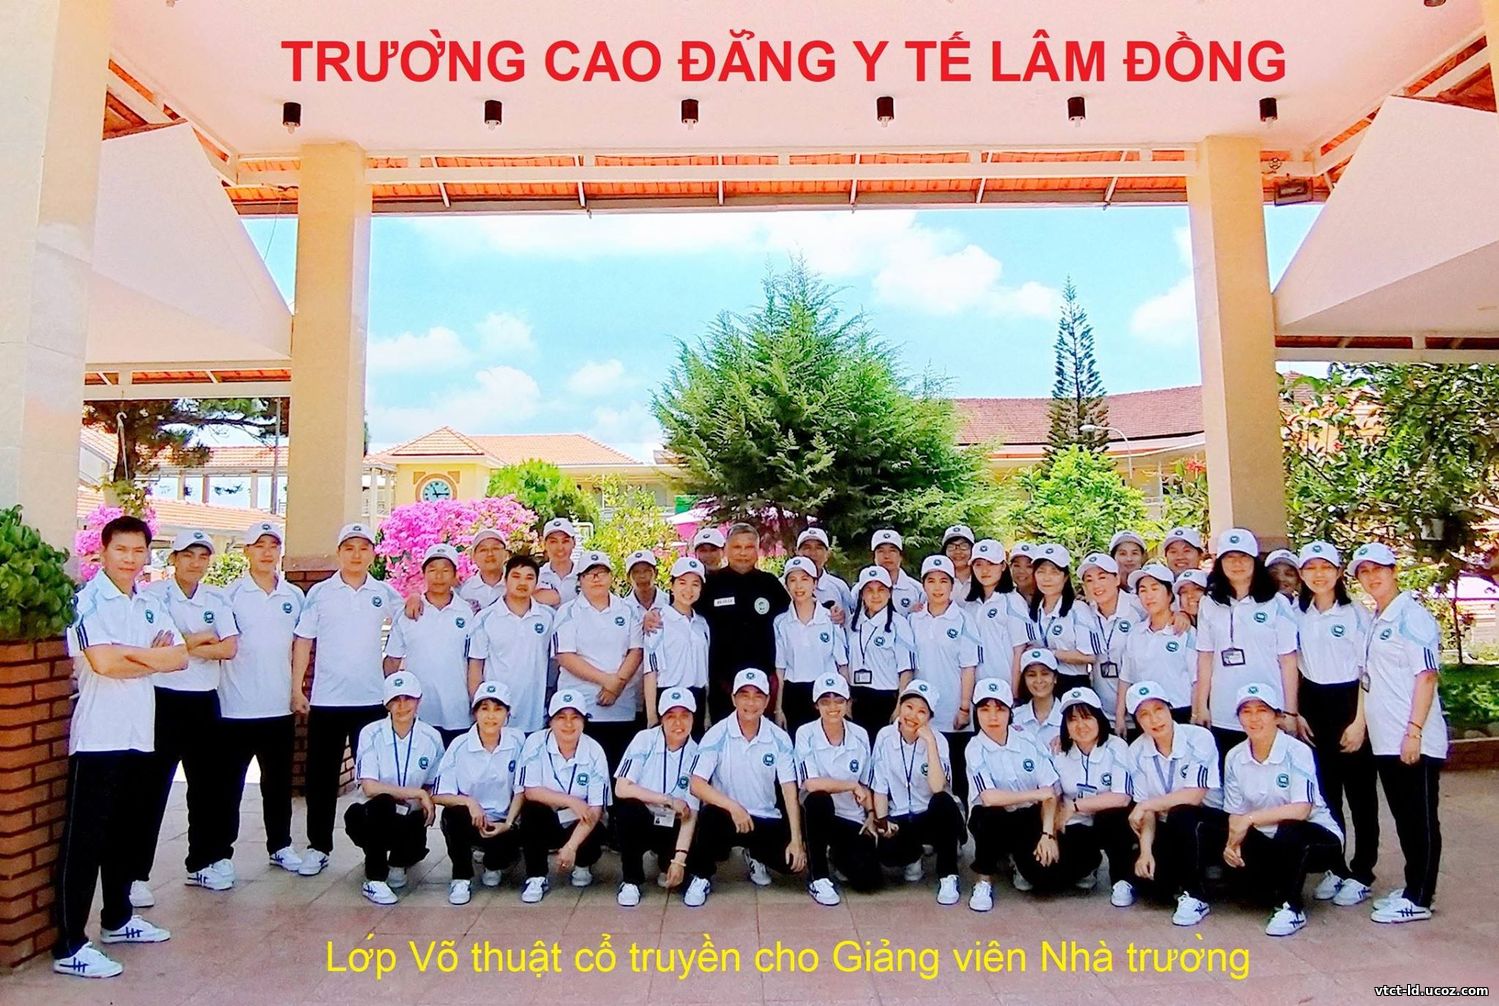 16 January 2020 - Võ cổ truyền Lâm Đồng